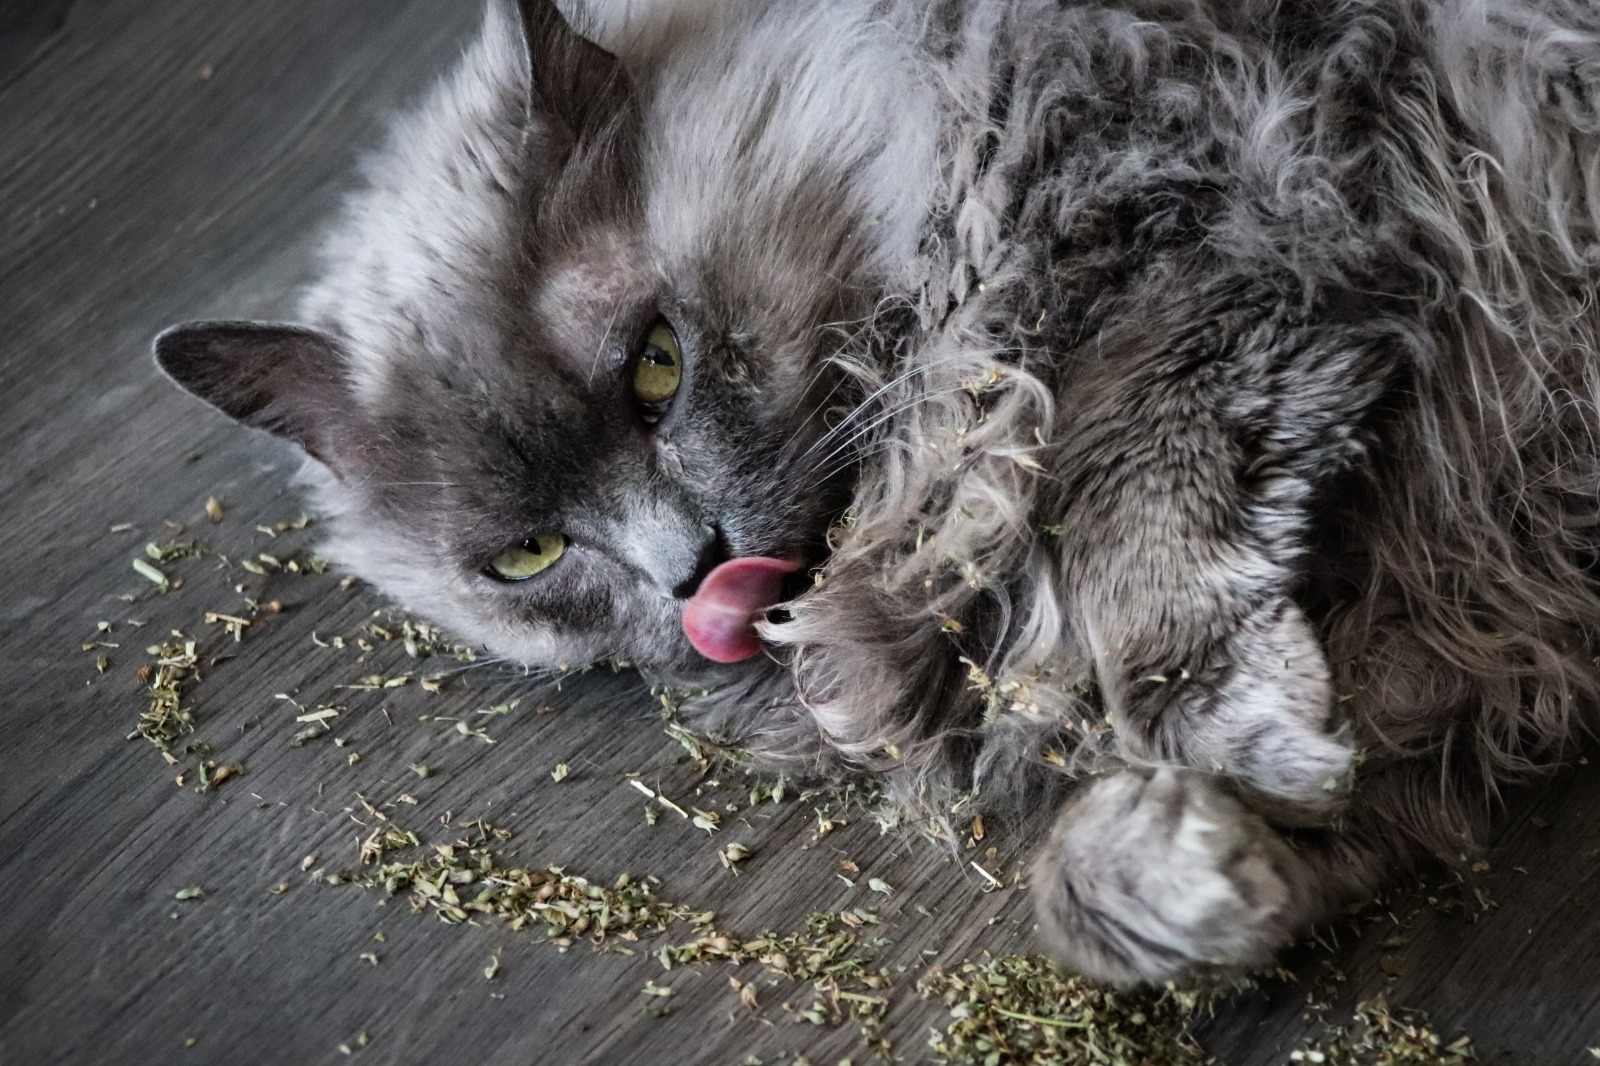 Sustancia de planta llamada catnip produce reacciones placenteras en los gatos (Foto Prensa Libre, Shutterstock)